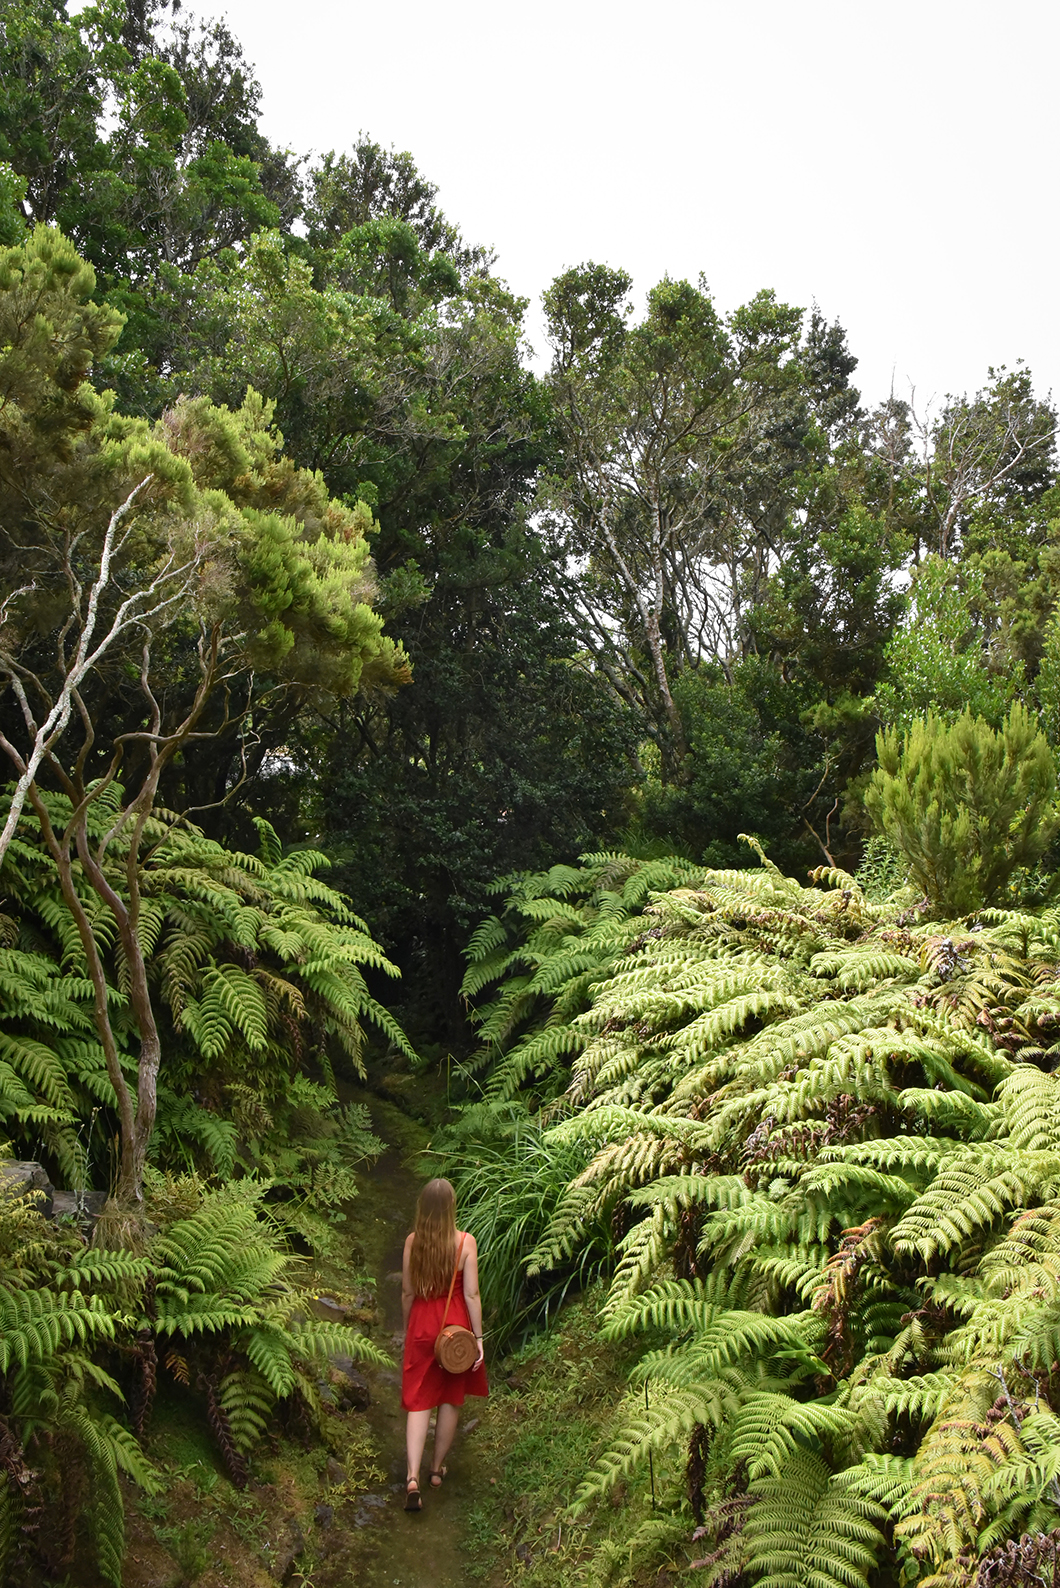 Point de vue sympa au jardin botanique de Faial dans les Açores